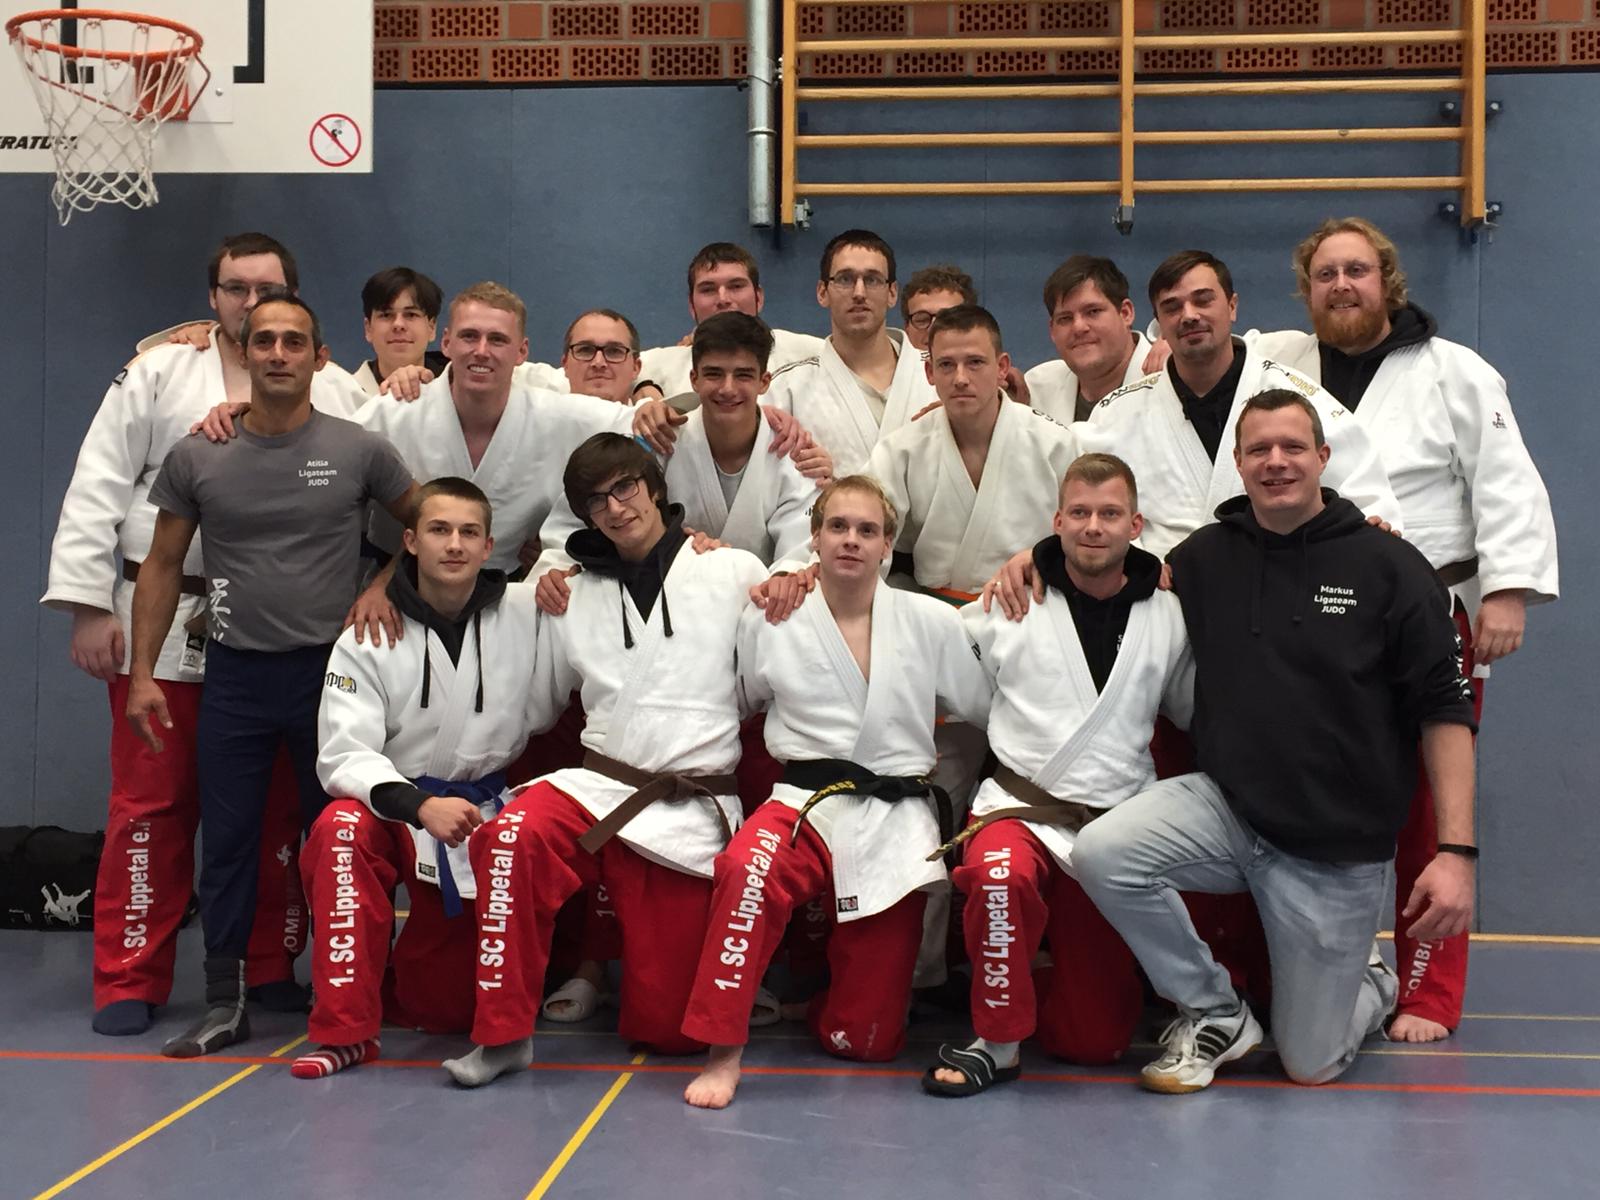 Lippstädter Judoka feiern in der Landesliga den Klassenerhalt – Ein Aufstieg in die Verbandsliga ist noch möglich!